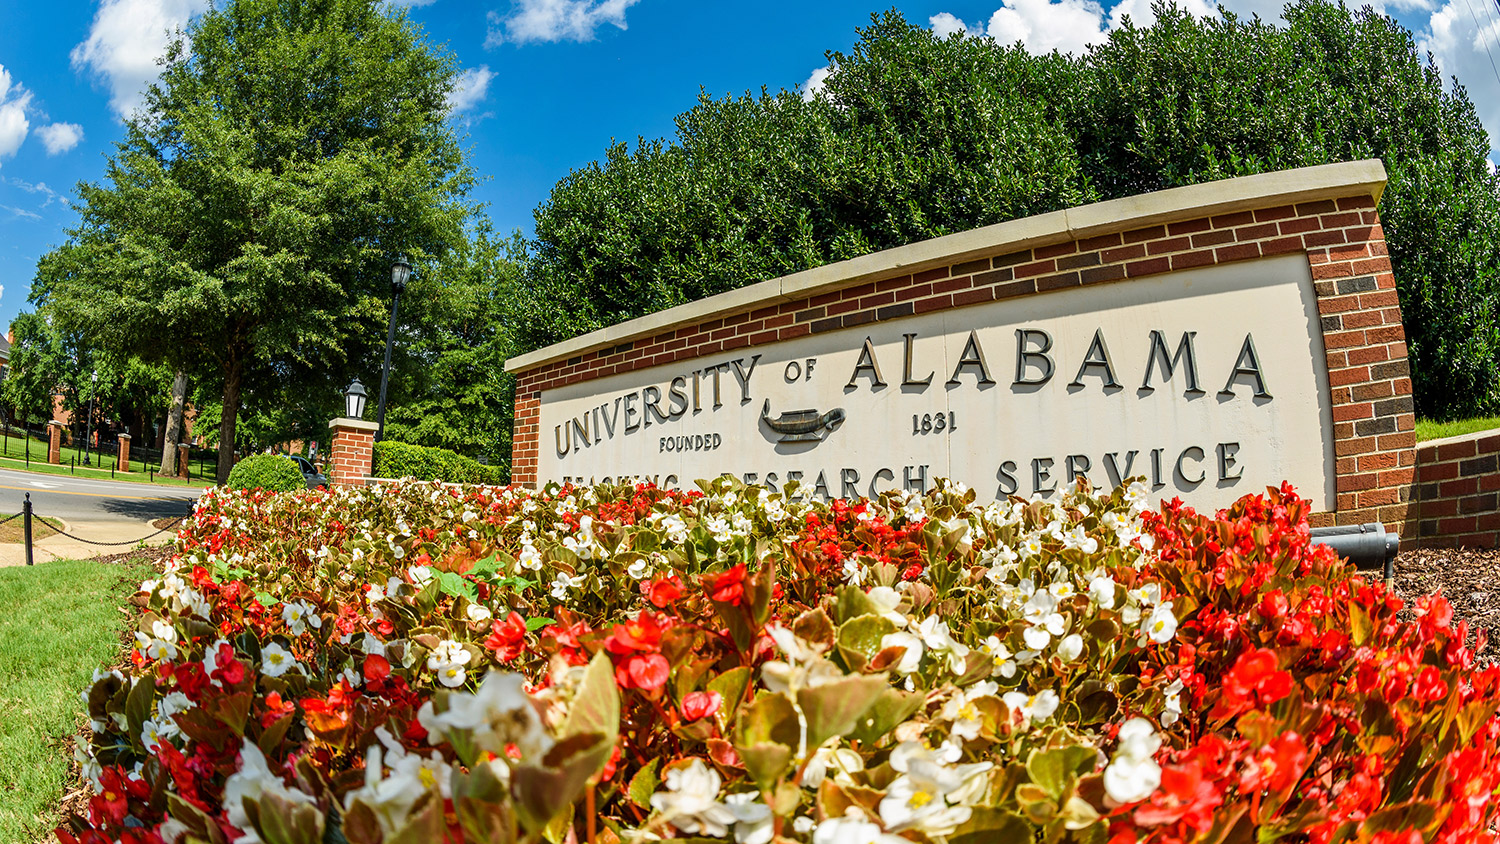 University of Alabama sign